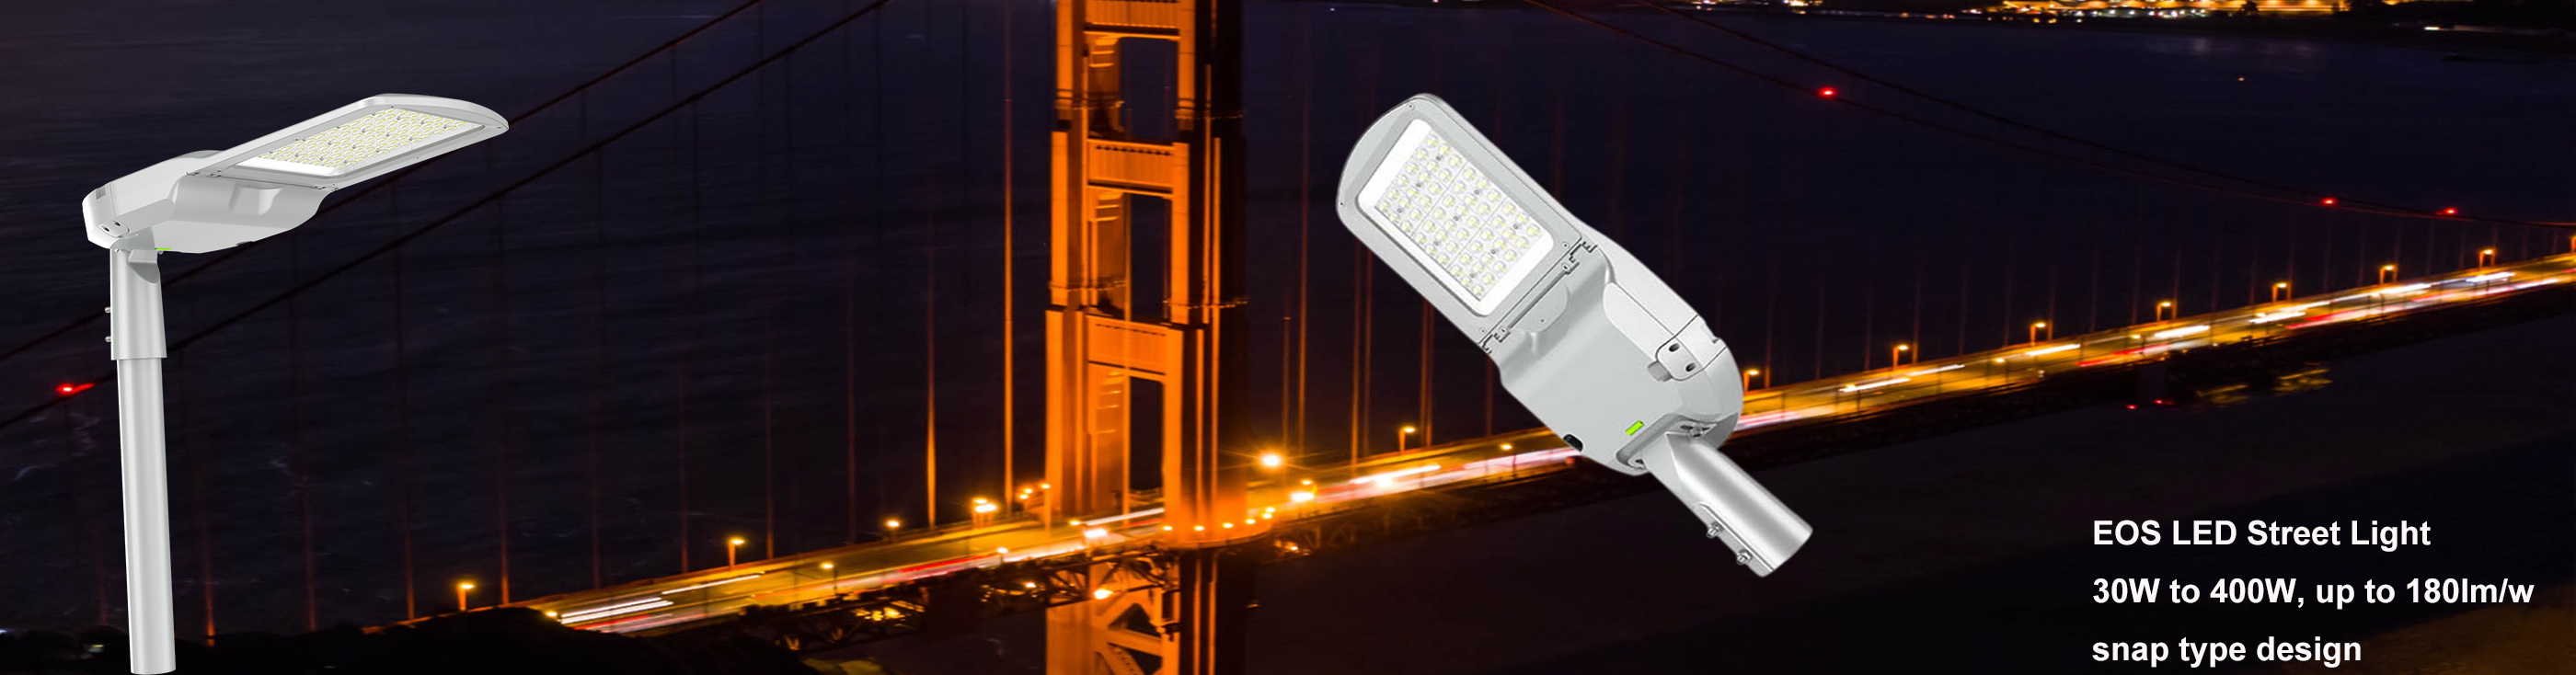 LED stadium light LED street light LED flood light manufacturer in China